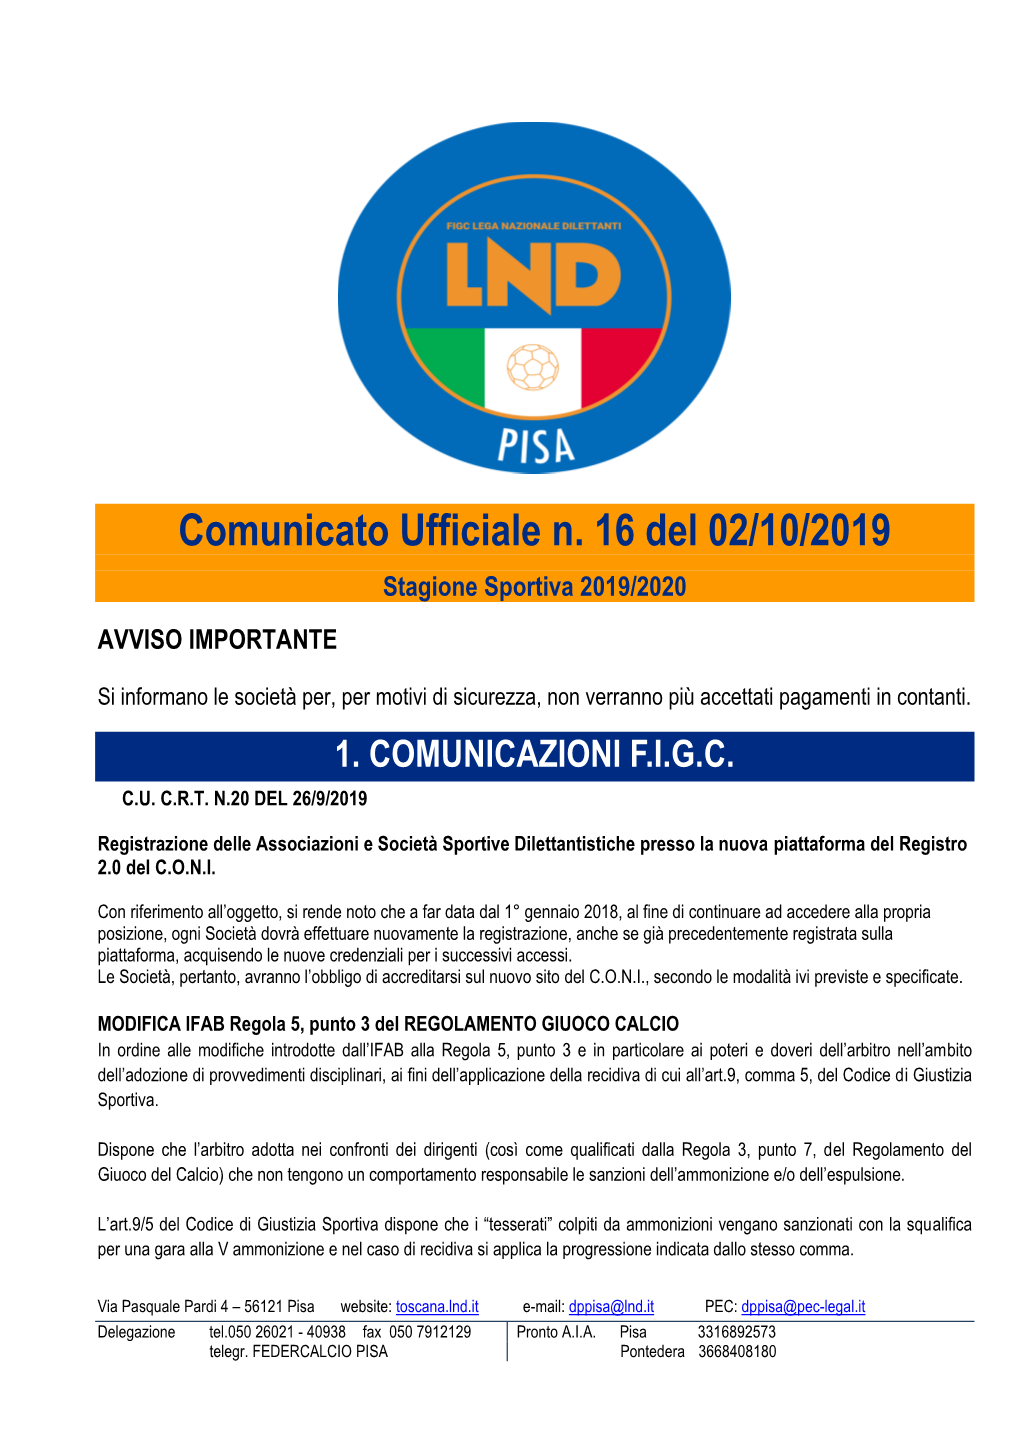 Comunicato Ufficiale N. 16 Del 02/10/2019